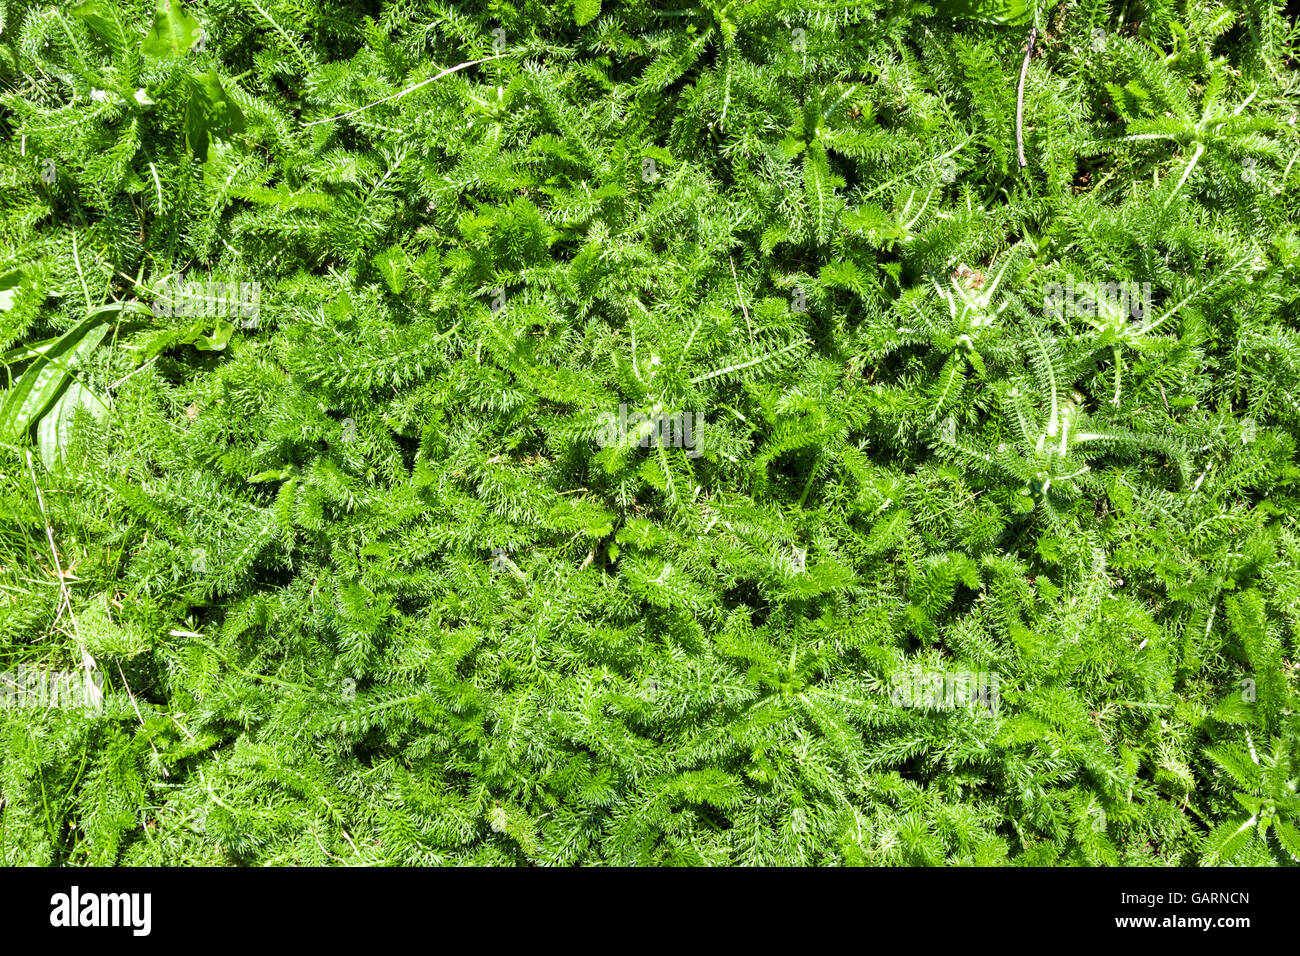 green grass texture Stock Photo